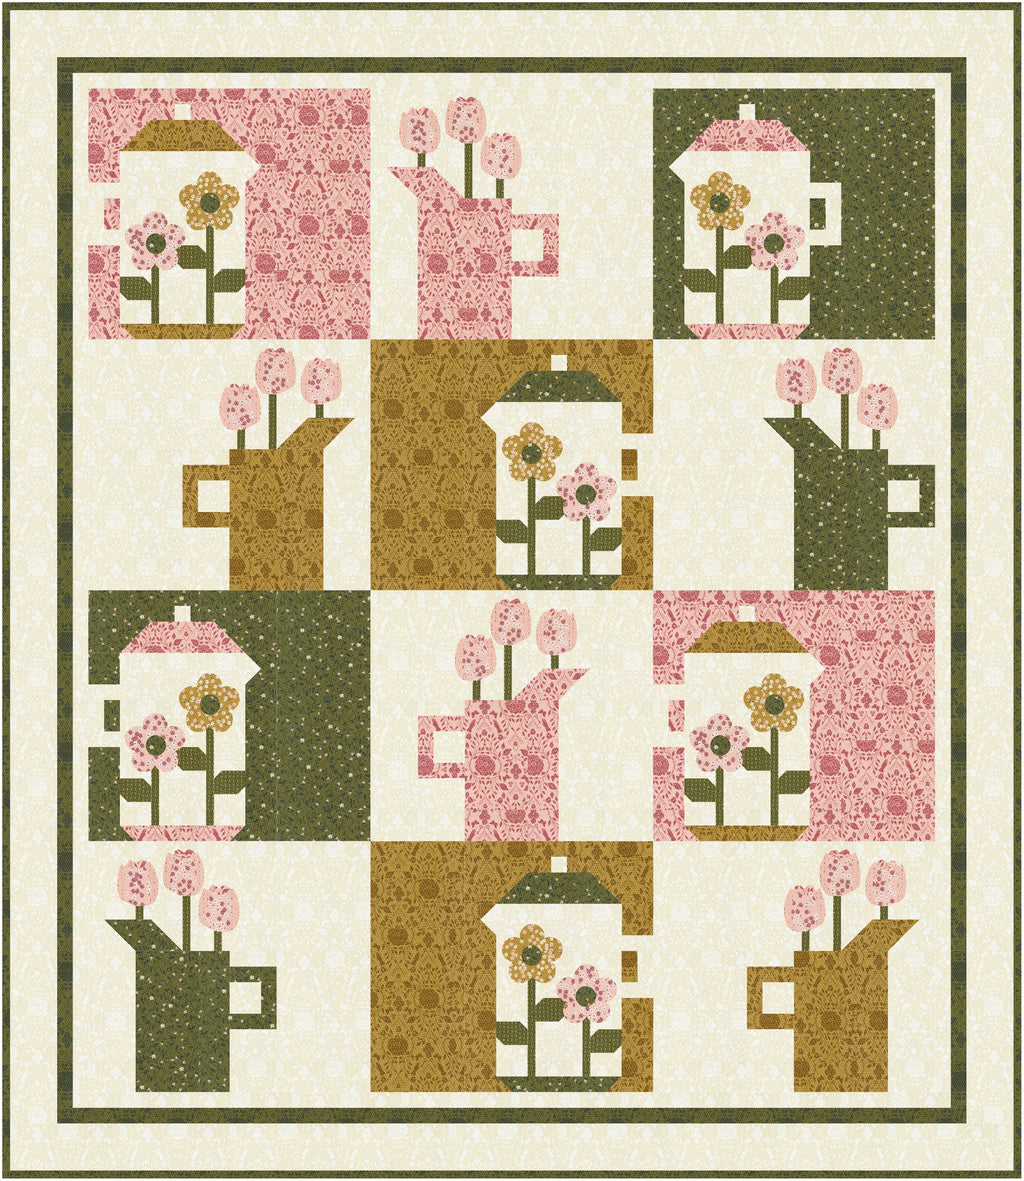 Hope Blooms Lap Quilt Pattern – Coach House Designs US